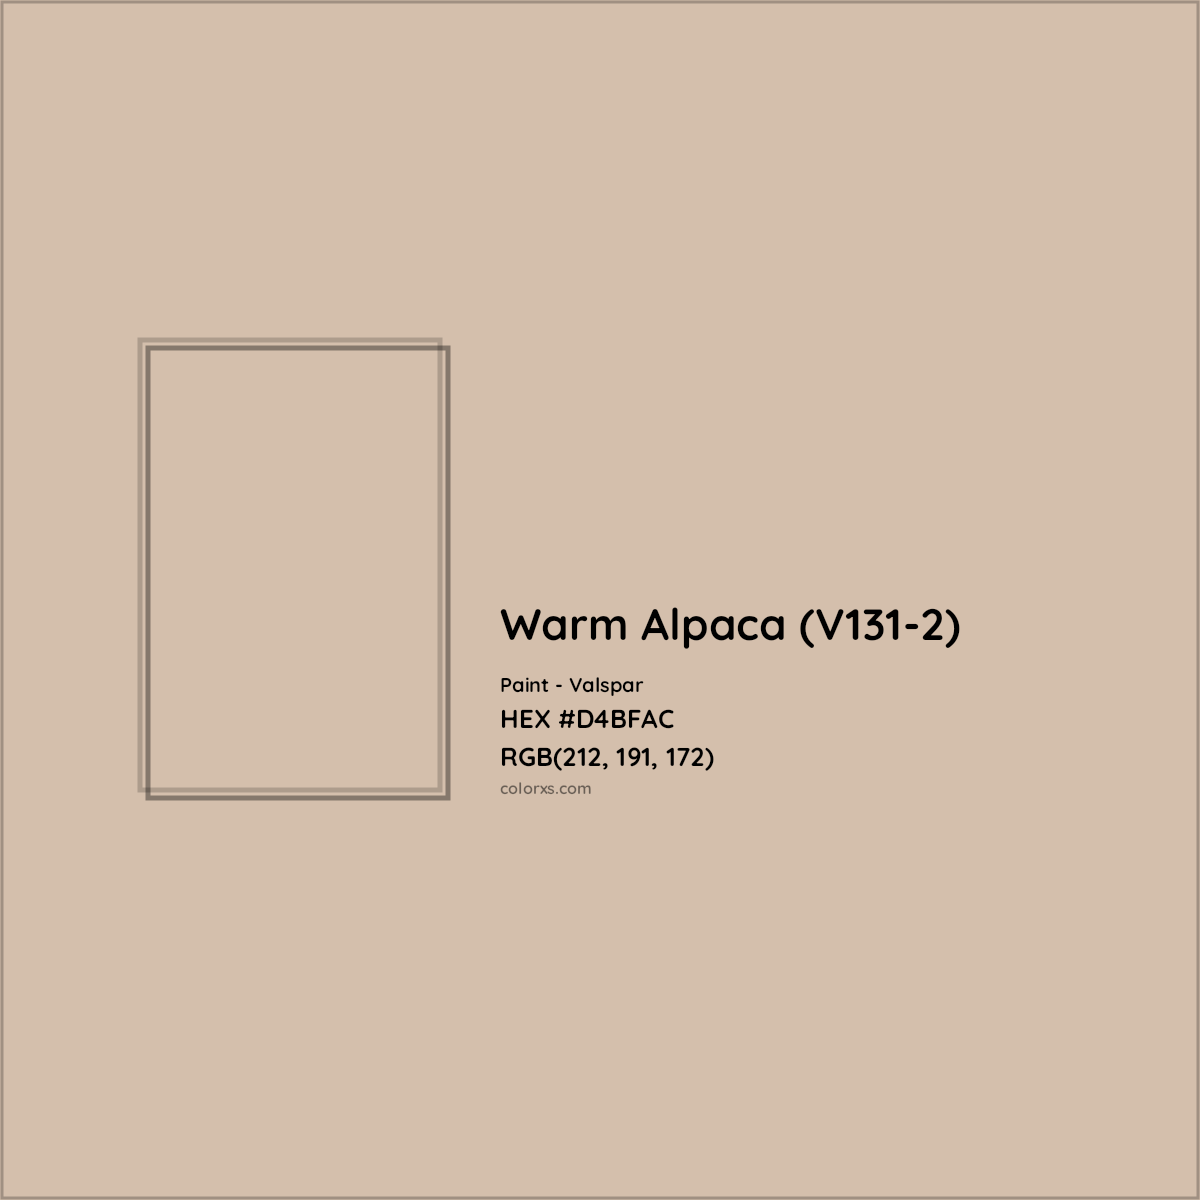 HEX #D4BFAC Warm Alpaca (V131-2) Paint Valspar - Color Code